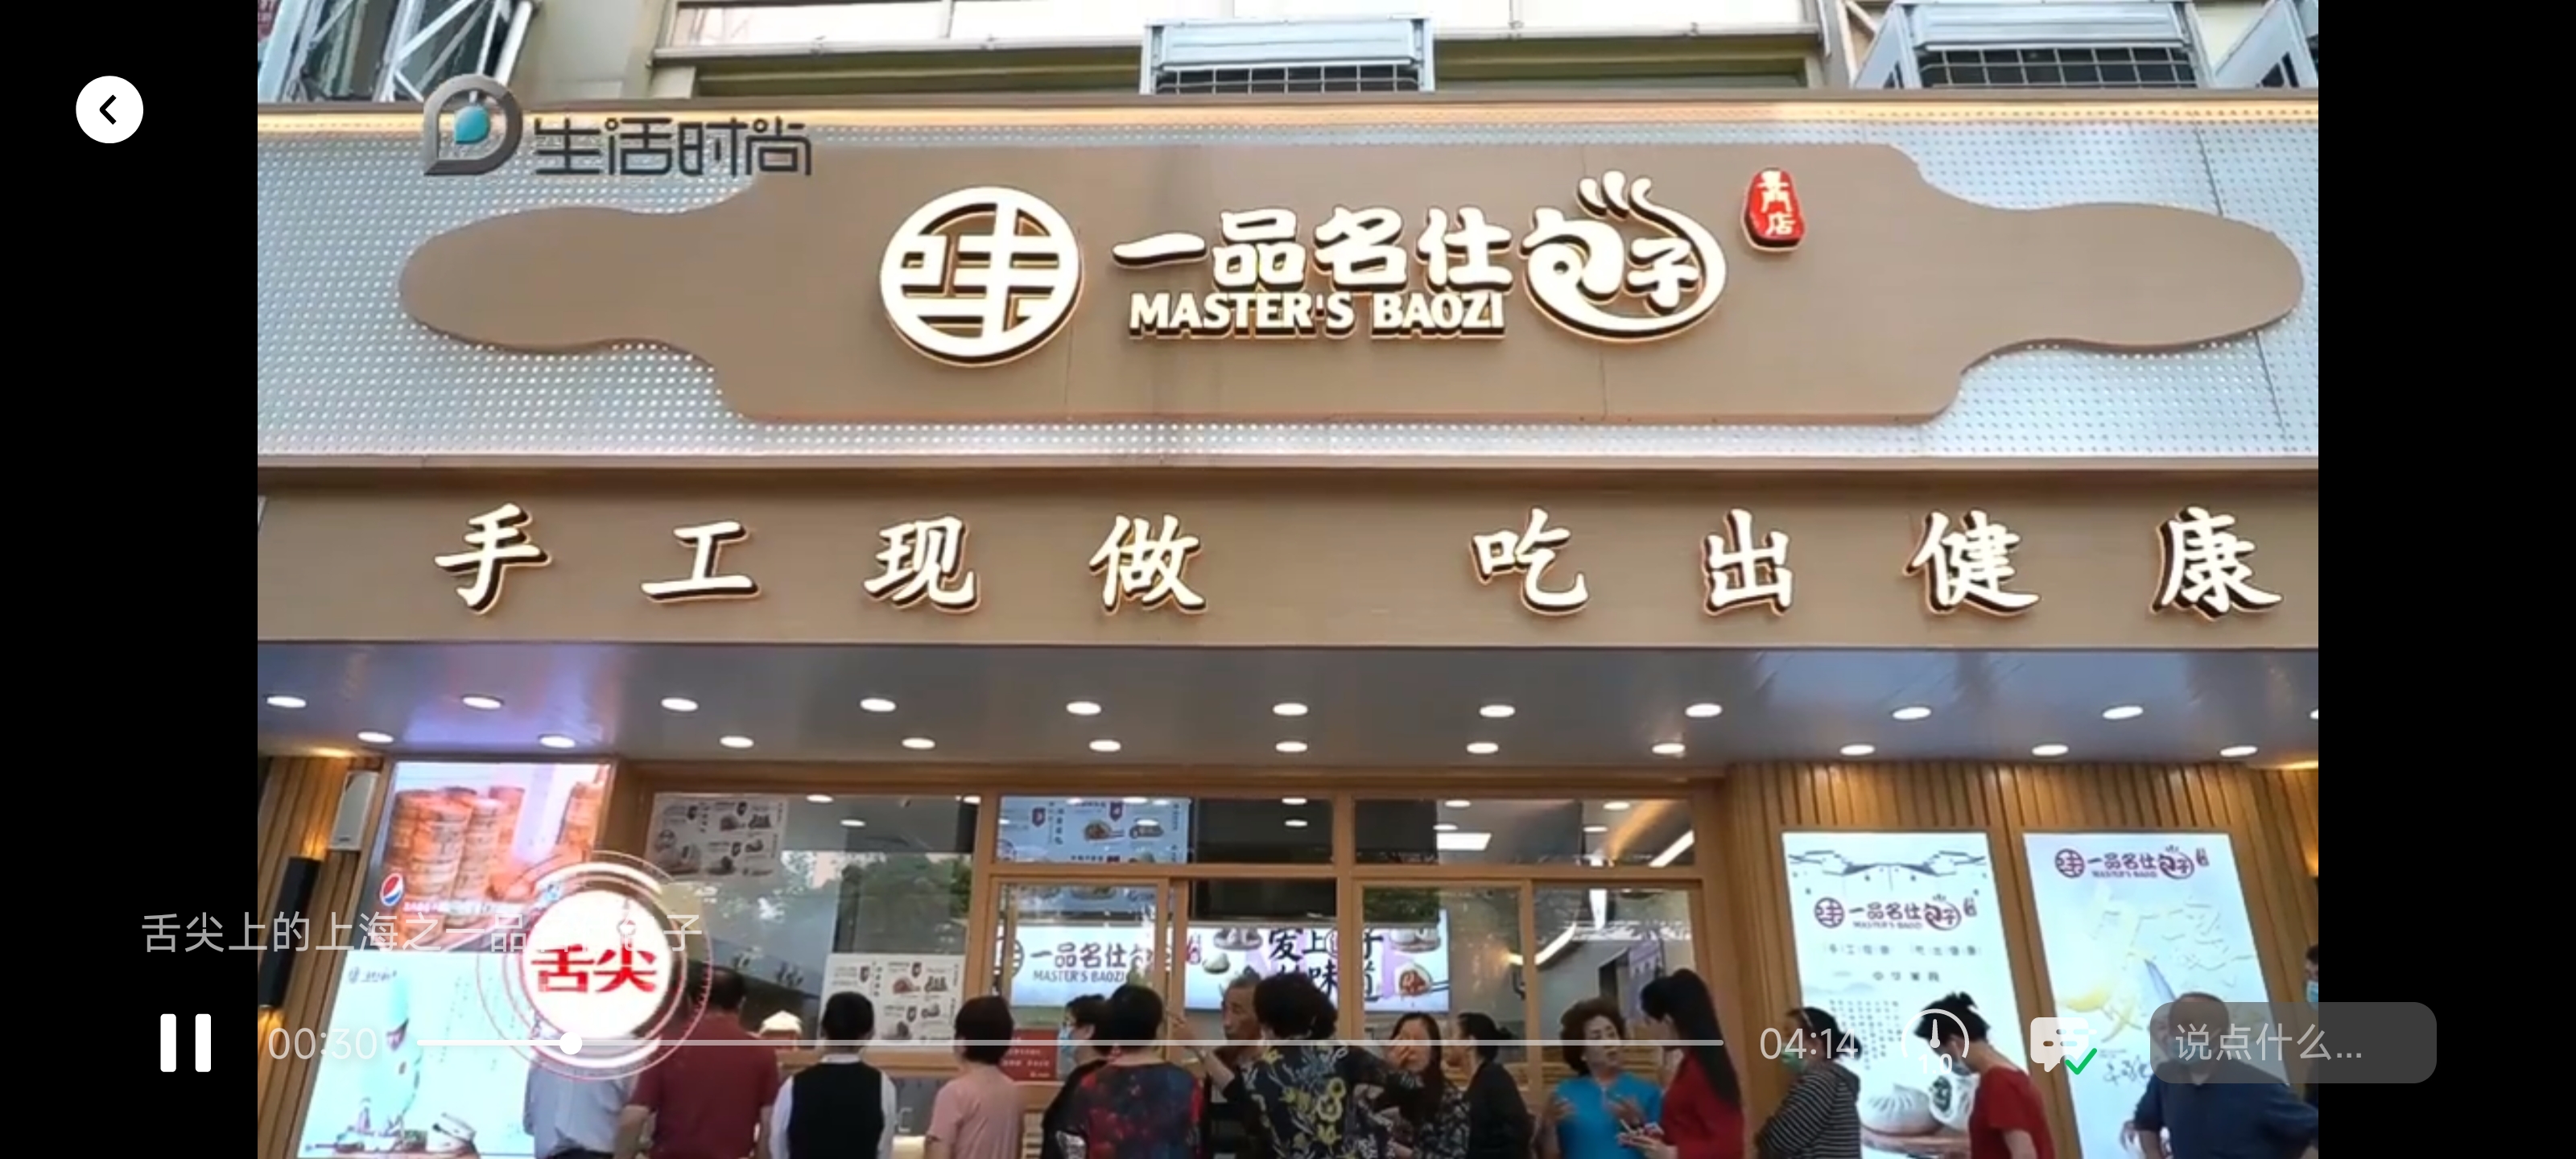 合作伙伴在上海扩张20多家门店，引起媒体多次报道